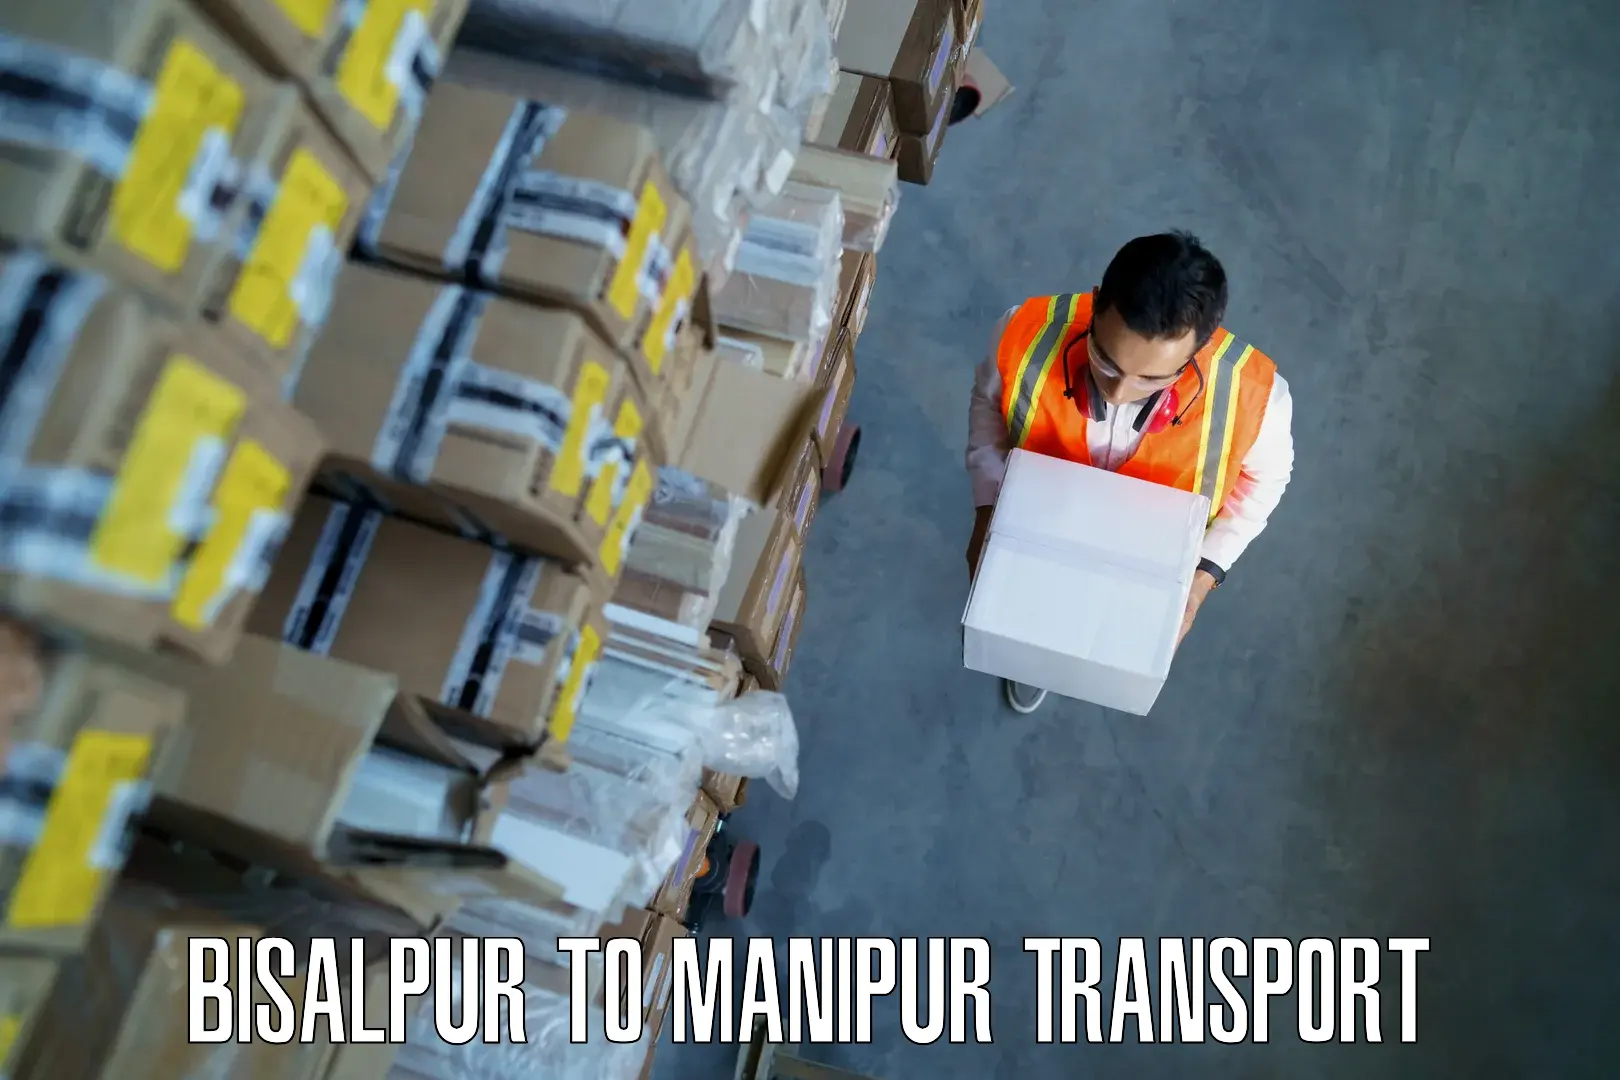 Transport shared services in Bisalpur to Churachandpur